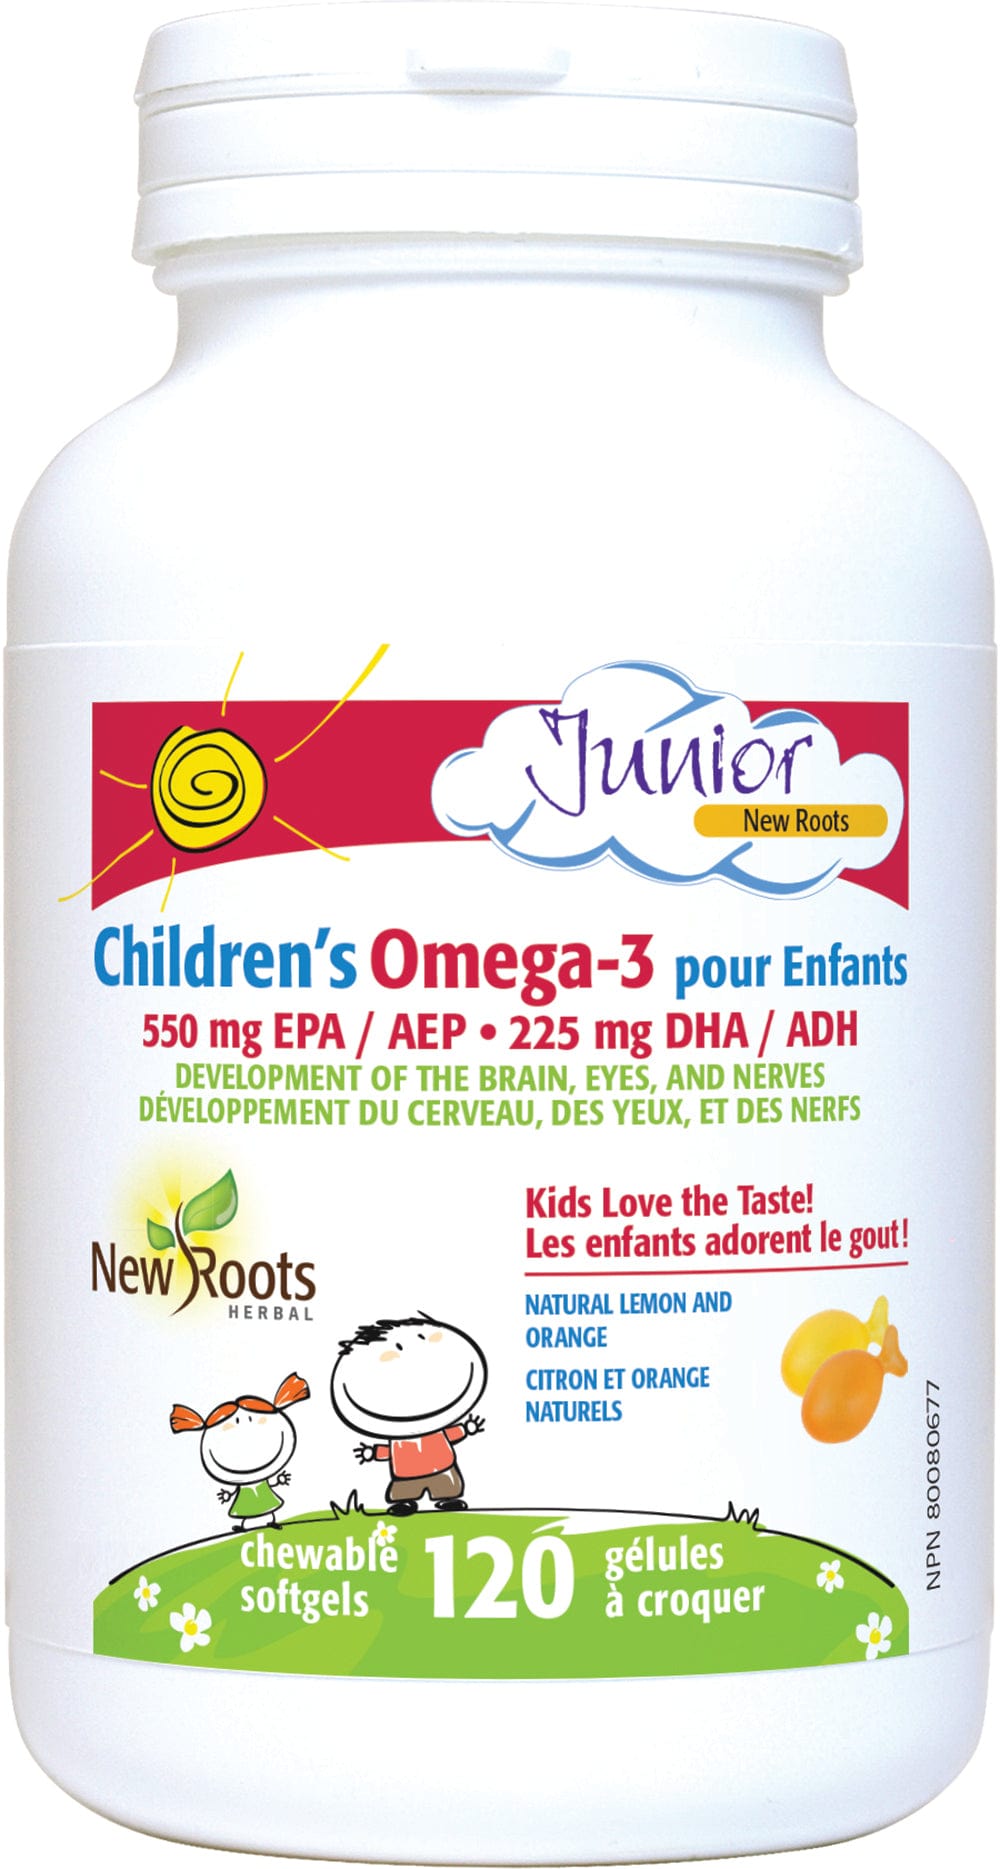 NEW ROOTS HERBAL Suppléments Omega-3 (enfant 550mg) (arôme citron à croquer) (1 à 18 ans) 120gel